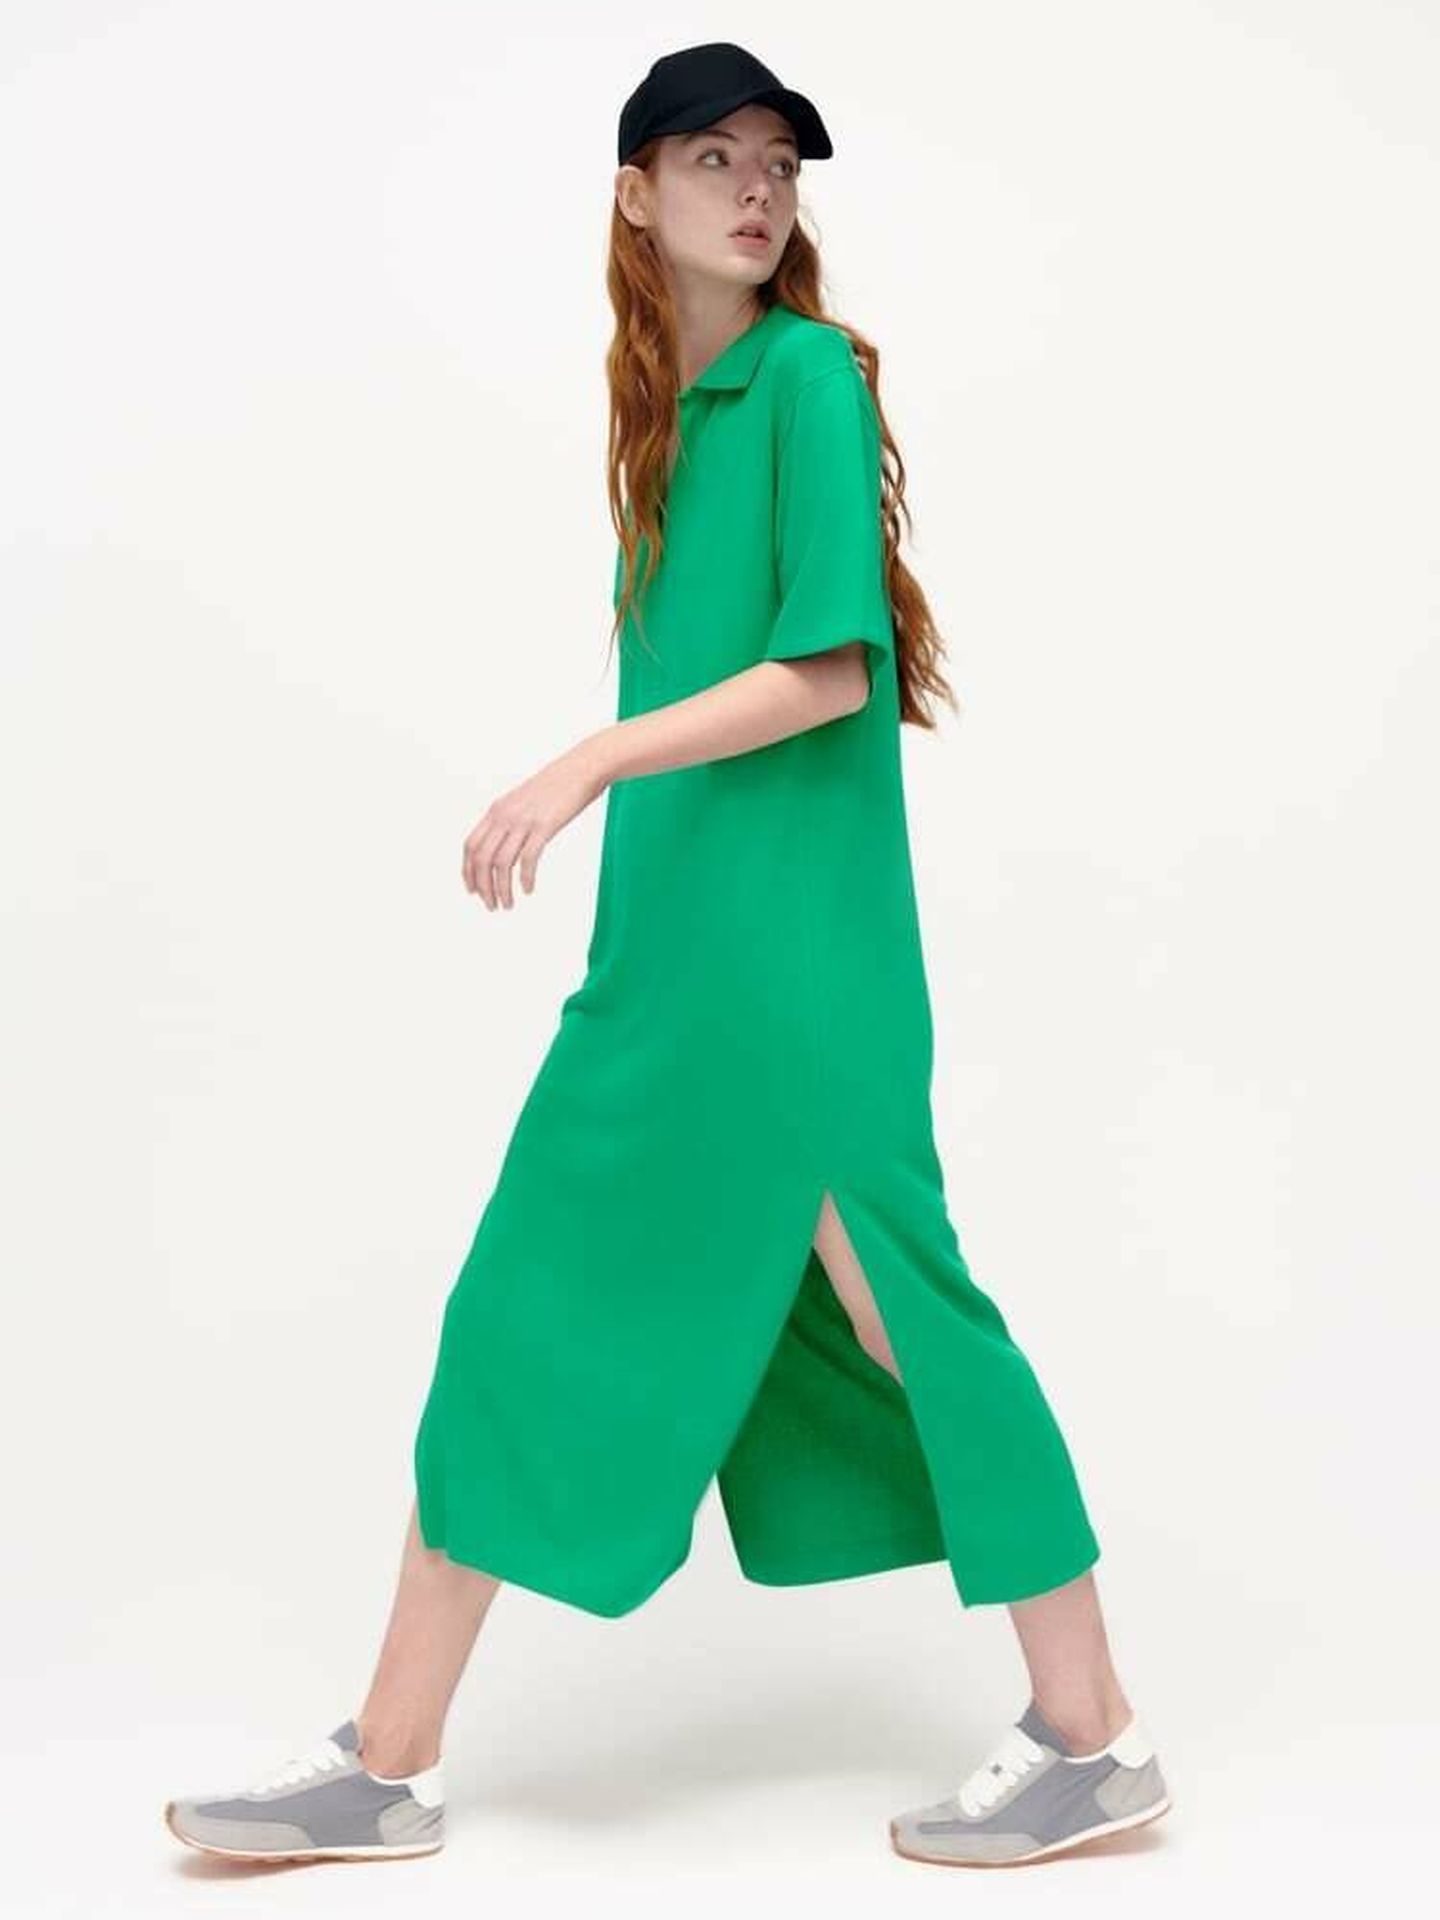 El nuevo vestido de Zara en color verde esmeralda. (Cortesía)